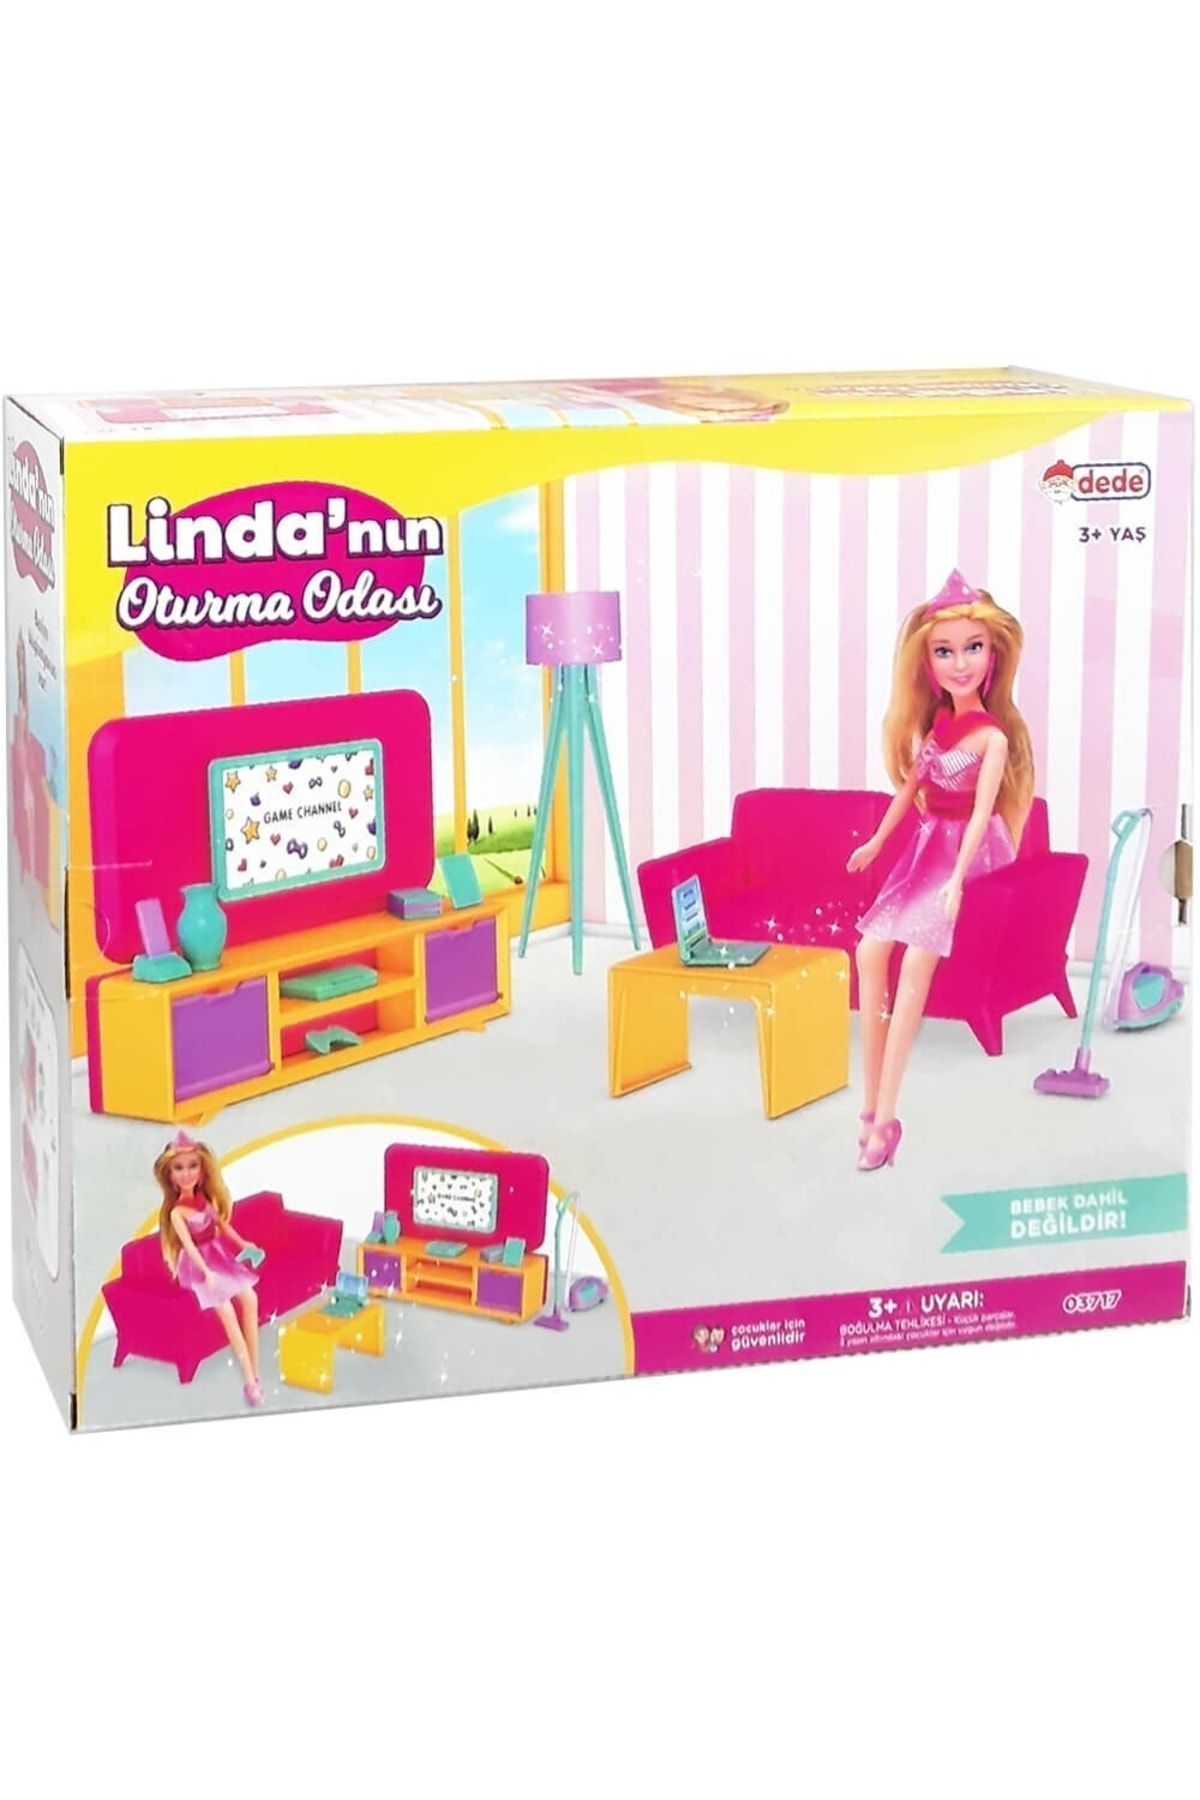 Dede Oyuncak Linda'nın Oturma Odası